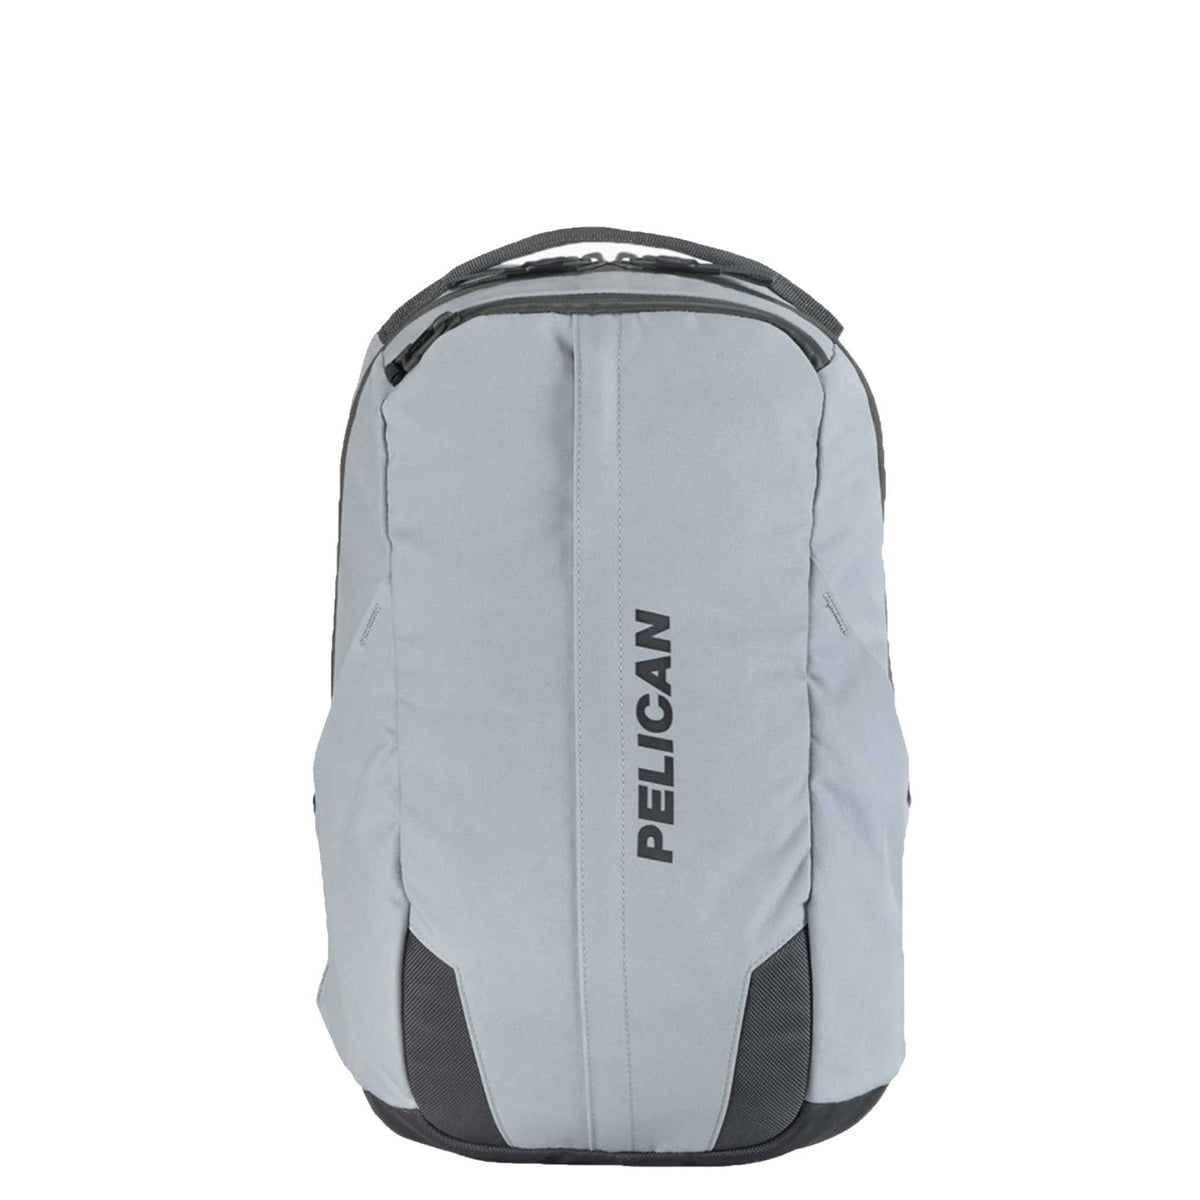 Pelican MPB20 Backpack in grey